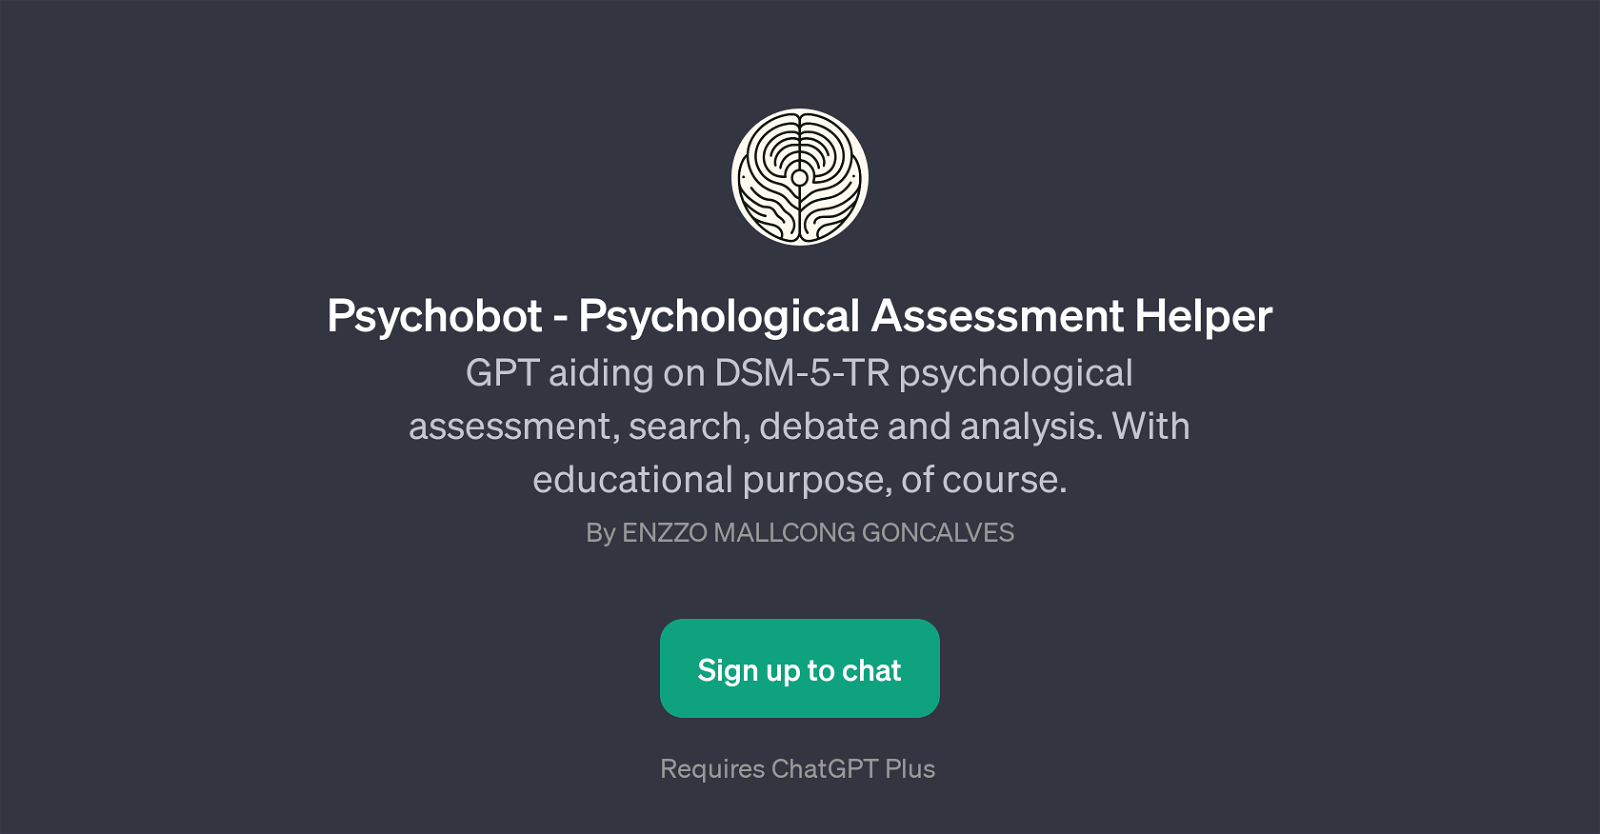 Psychobot - Psychological Assessment Helper website